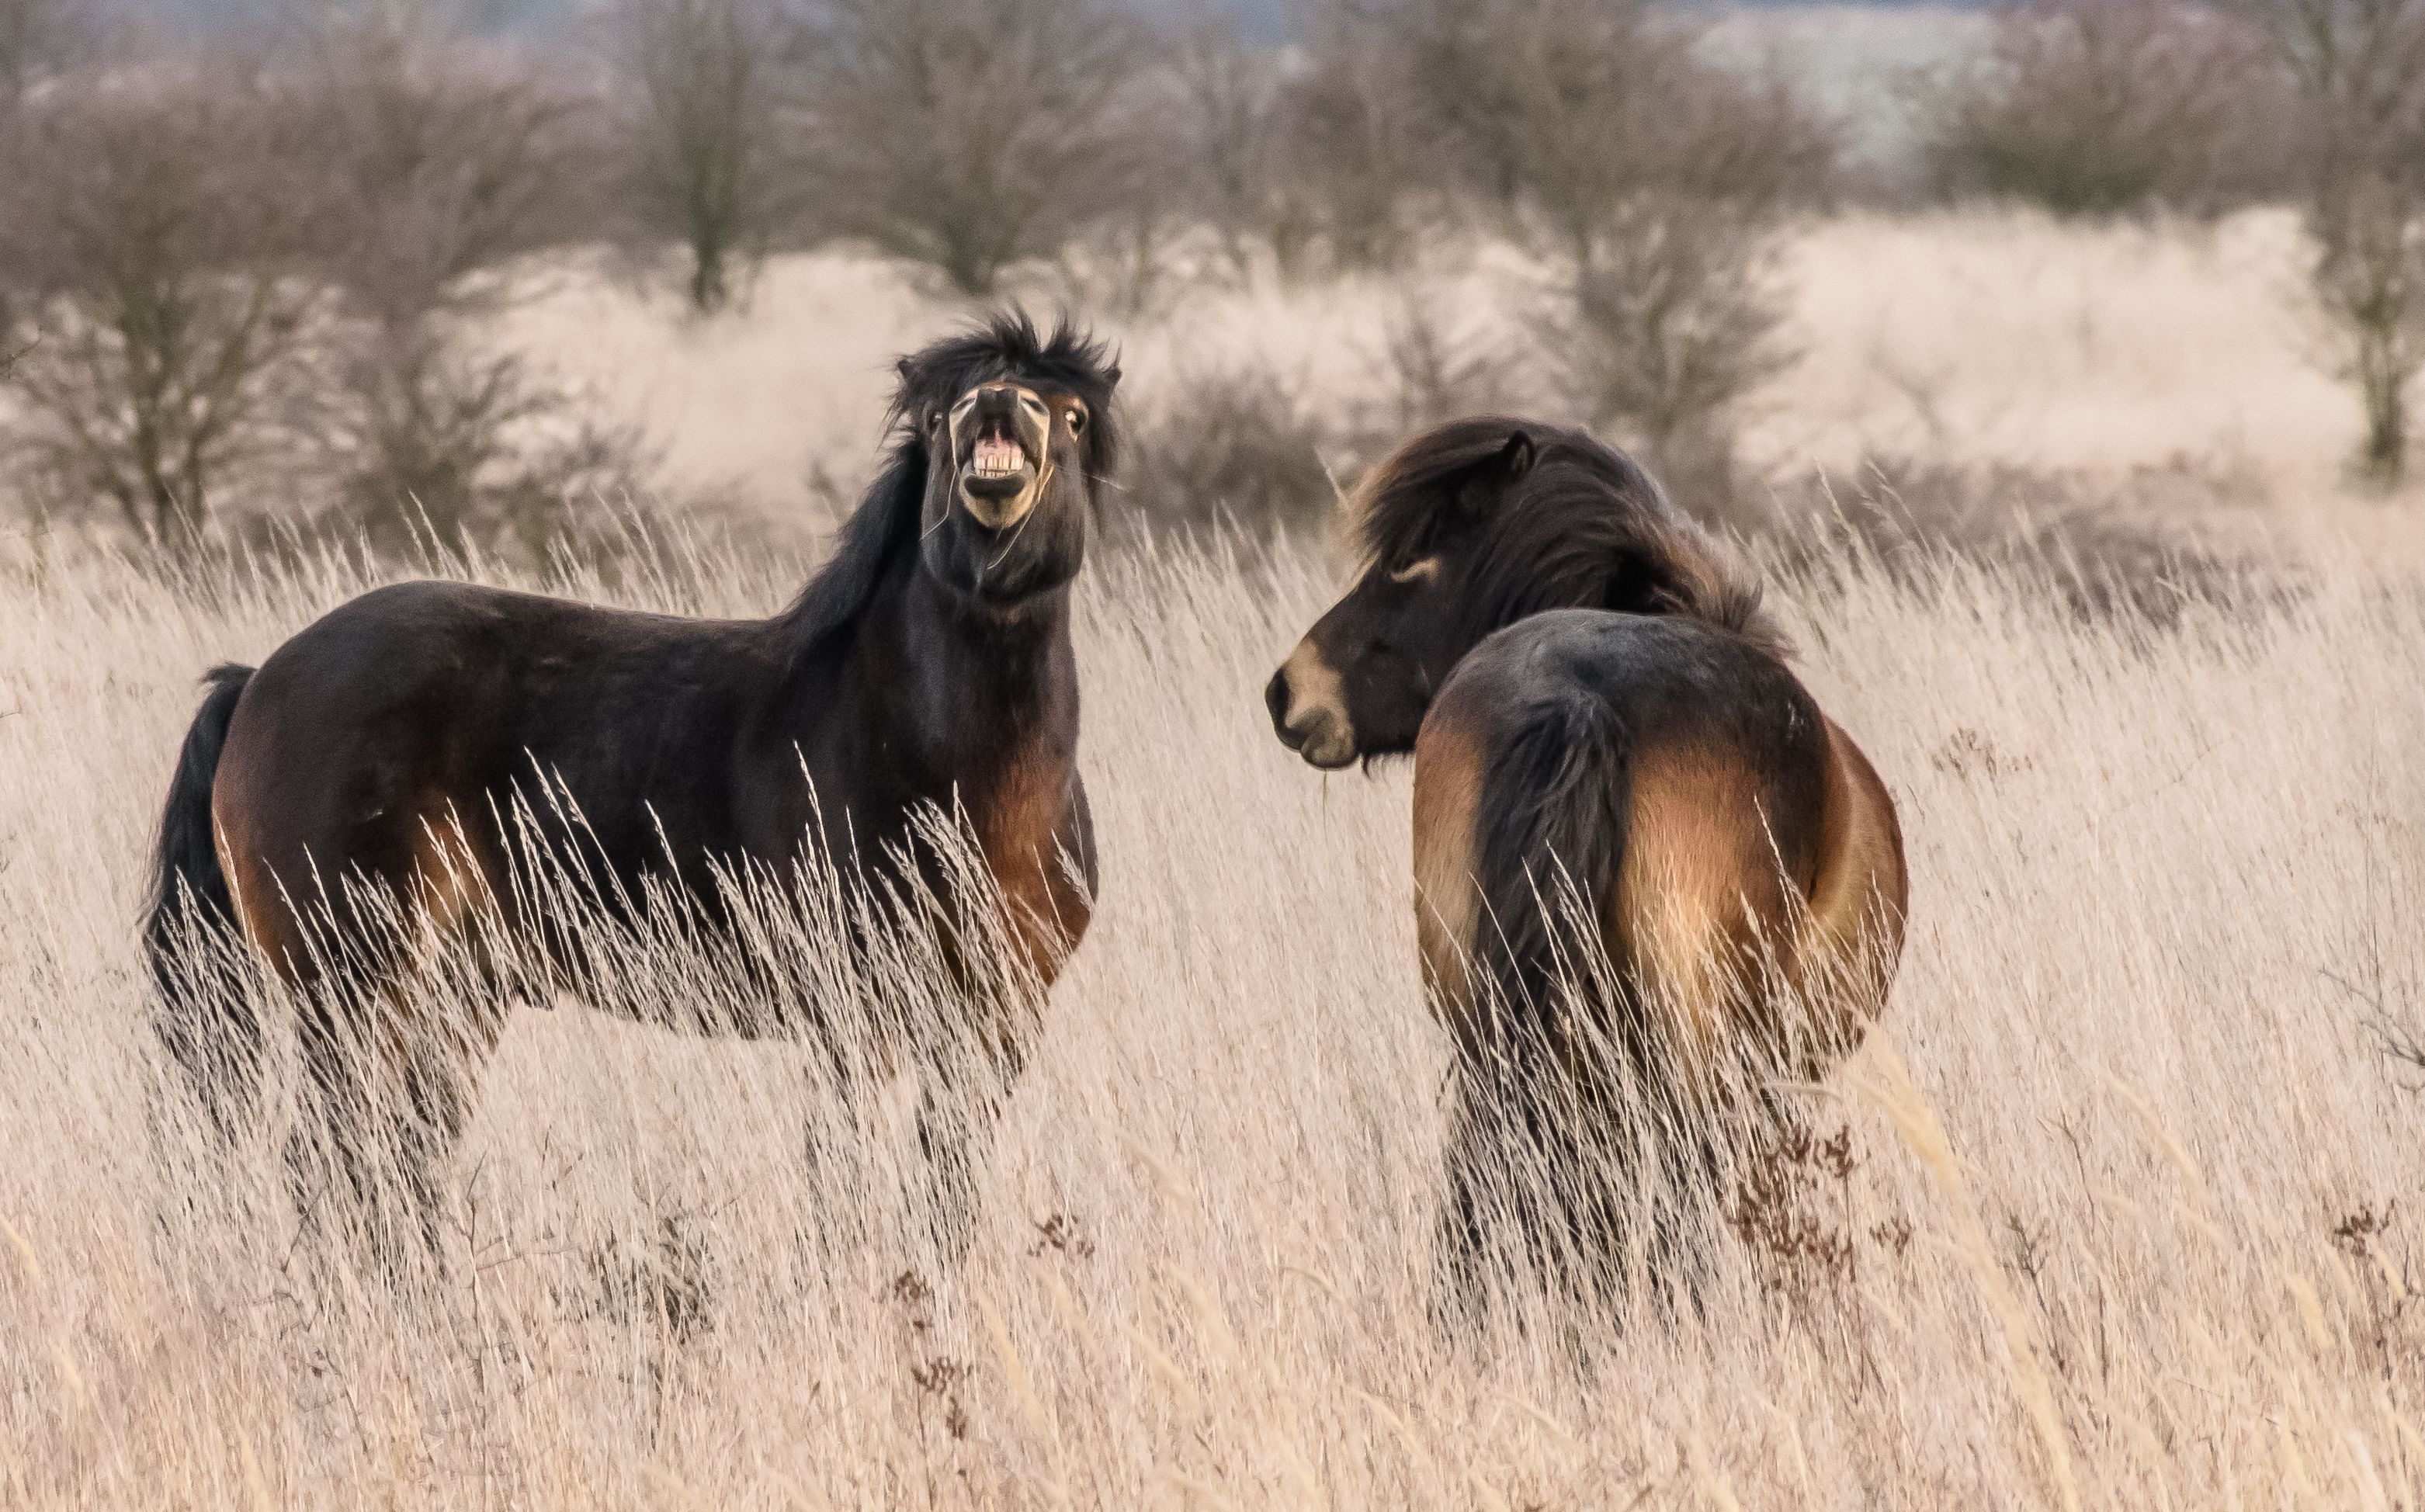 Výstava fotografií divokých koní a dalších velkých kopytníků se otevírá v Evropském domě v Praze